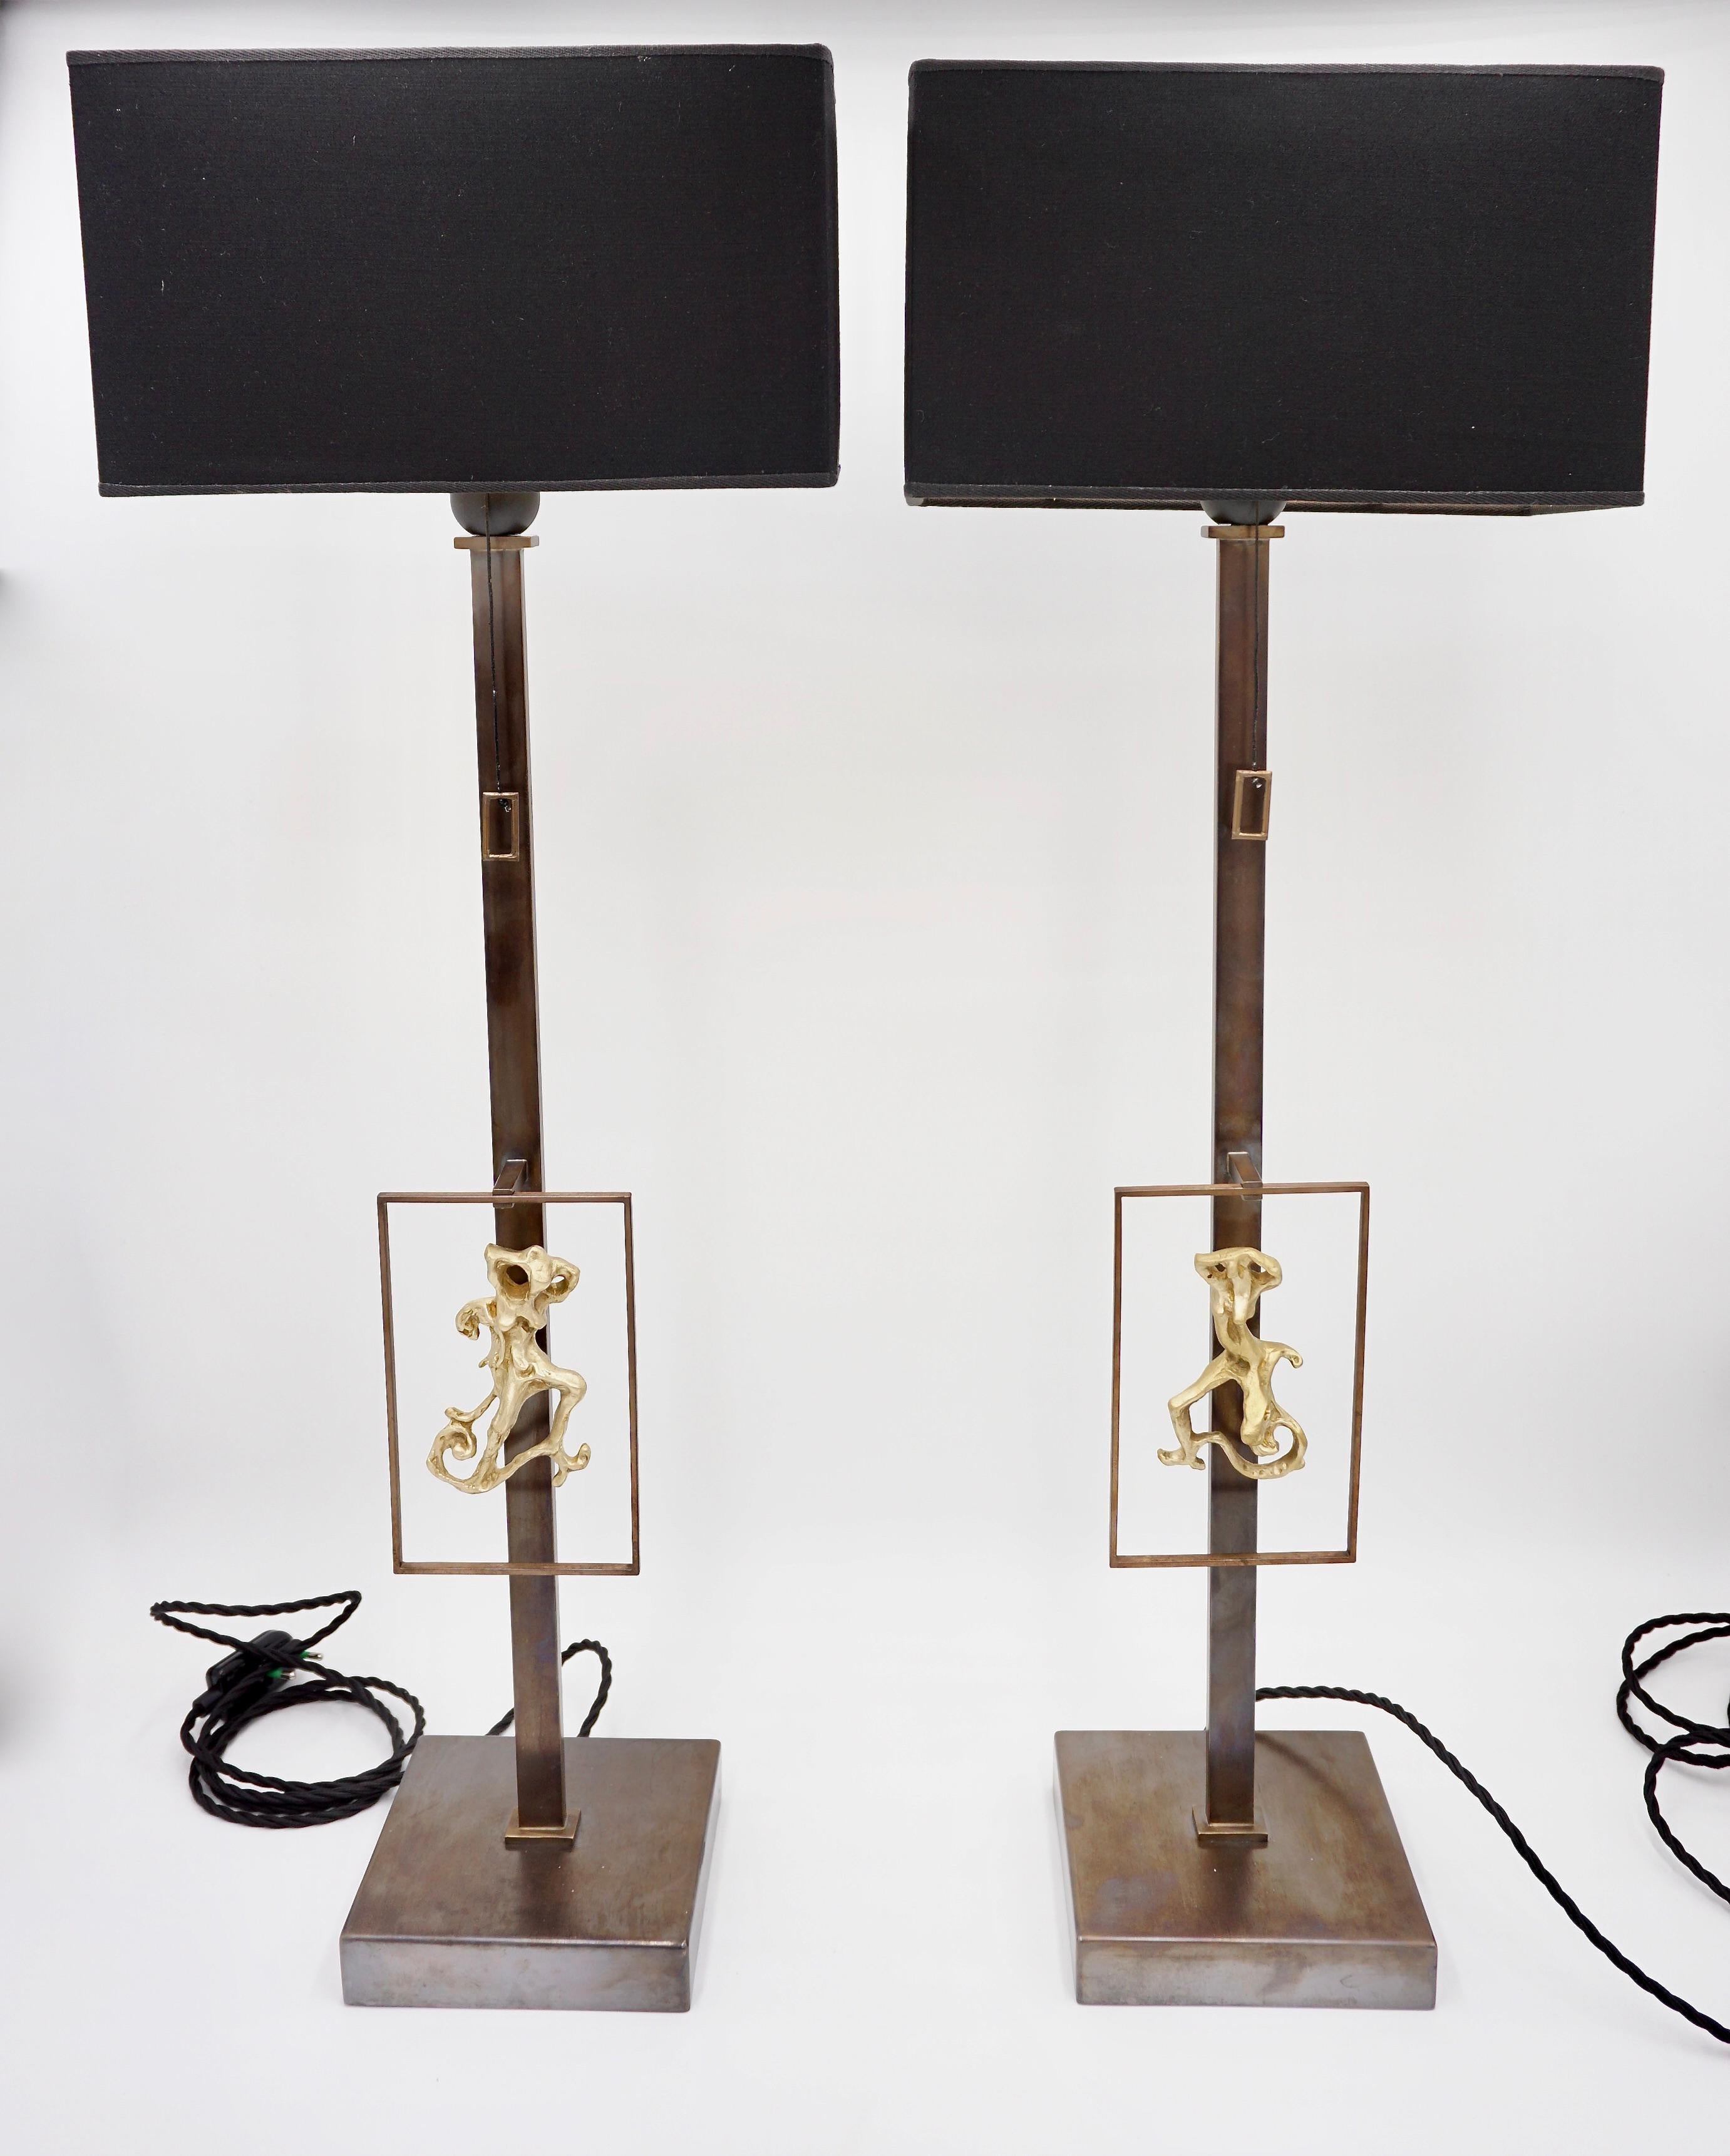 Les lampes de table conçues par Lorenzo Ciompi pour la série Masterpieces of Lights